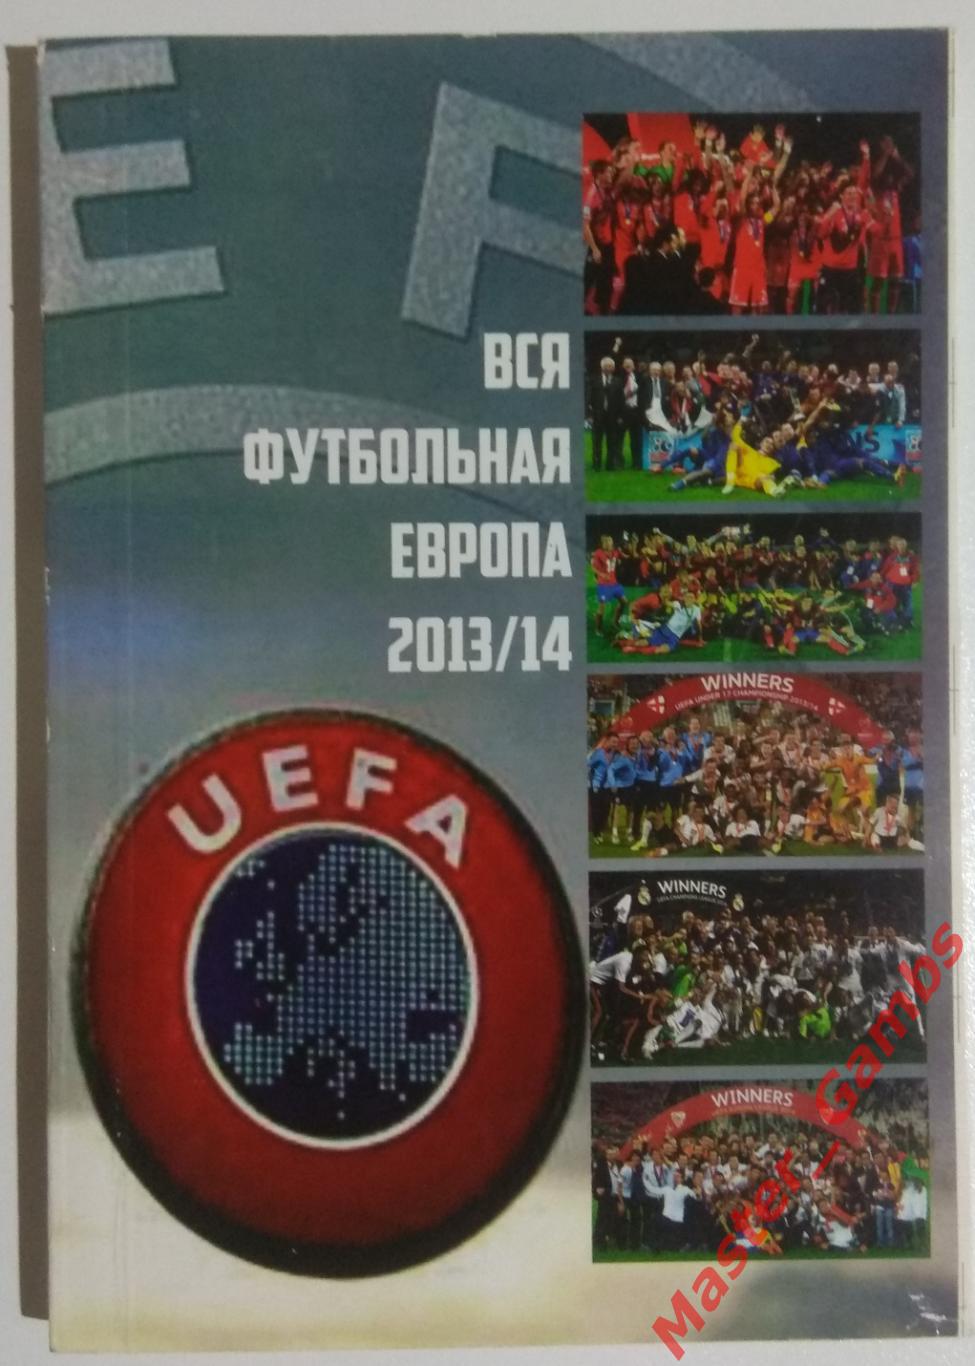 Ландер - Футбол в Украине #23 / Вся футбольная Европа #4 2013/2014* 1